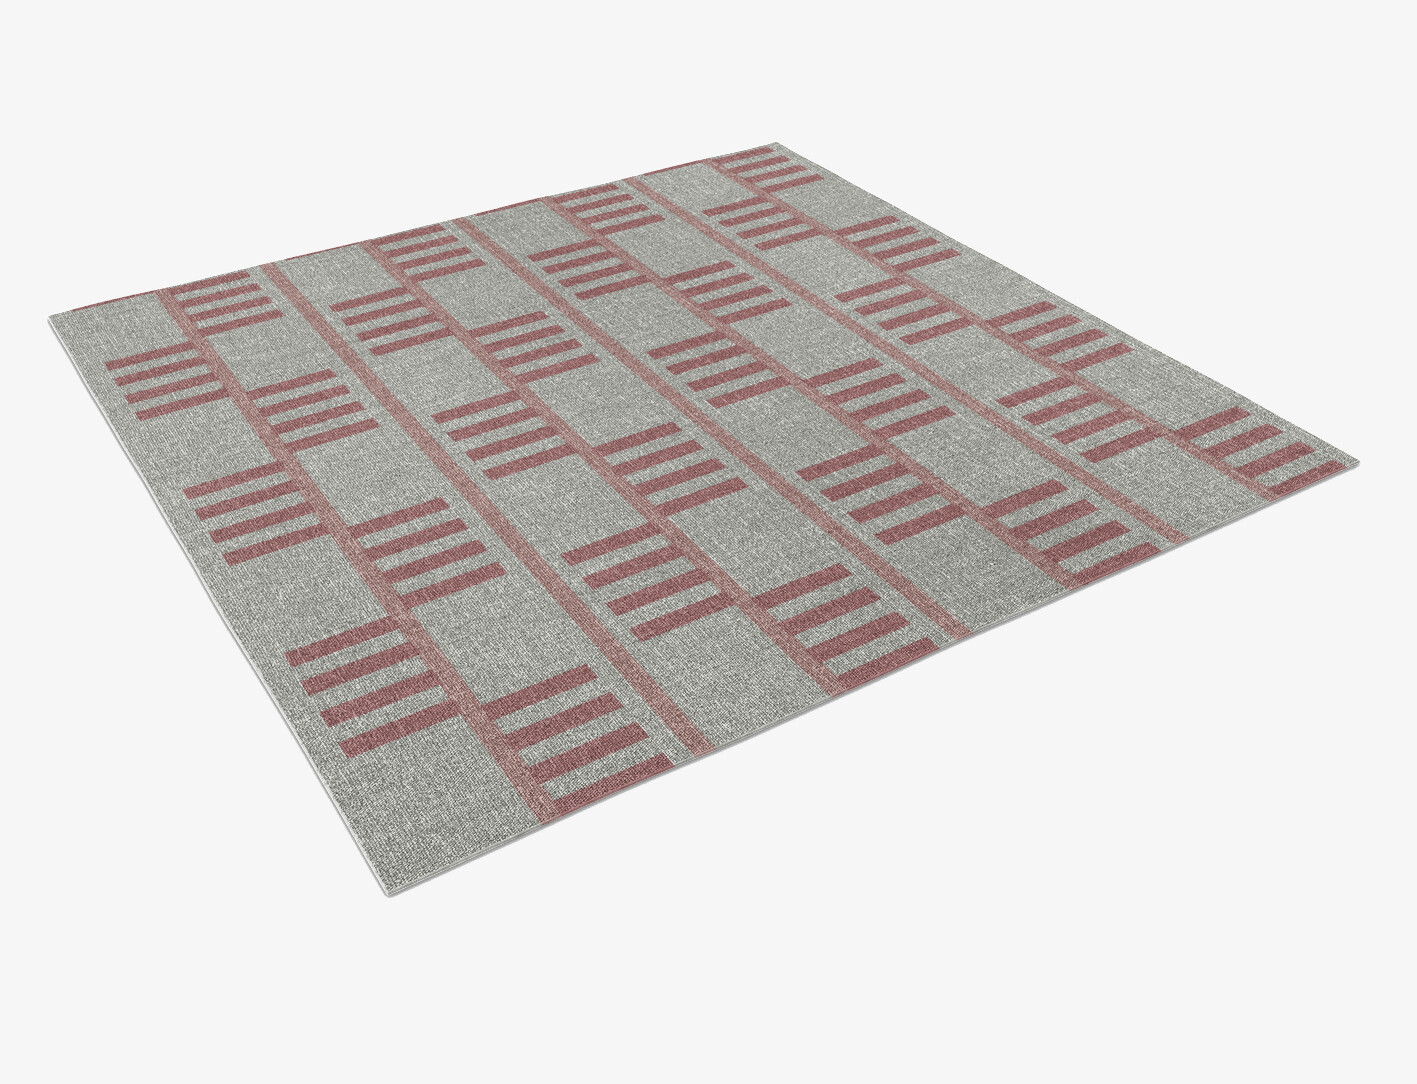 Klaue Geometric Square Outdoor Recycled Yarn Custom Rug by Rug Artisan